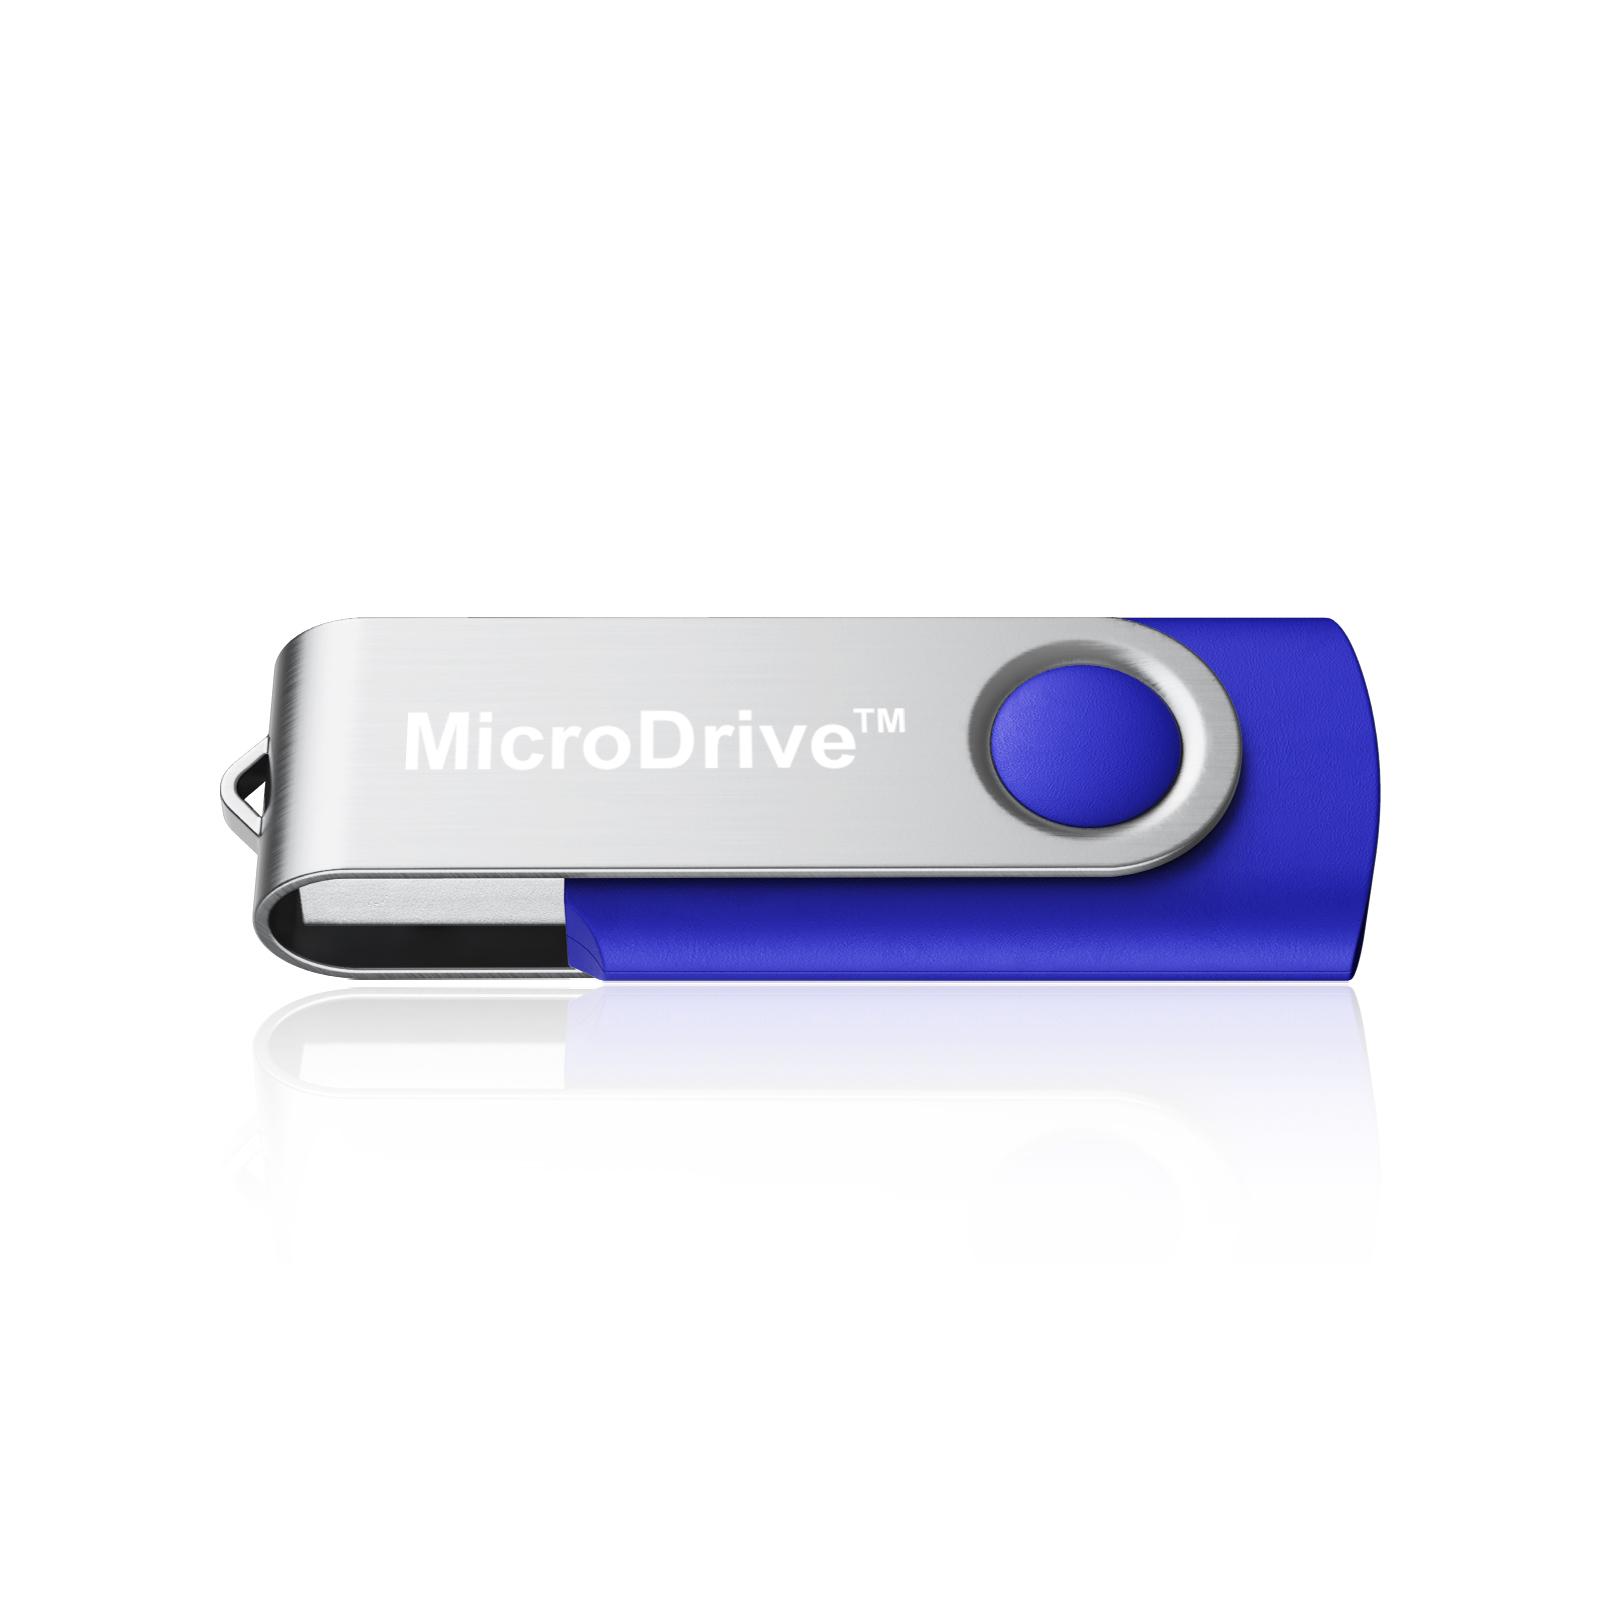 USB Stick Speicherstick Memorystick USB Speicher 4GB 8GB 16GB 32GB 64GB 128GB